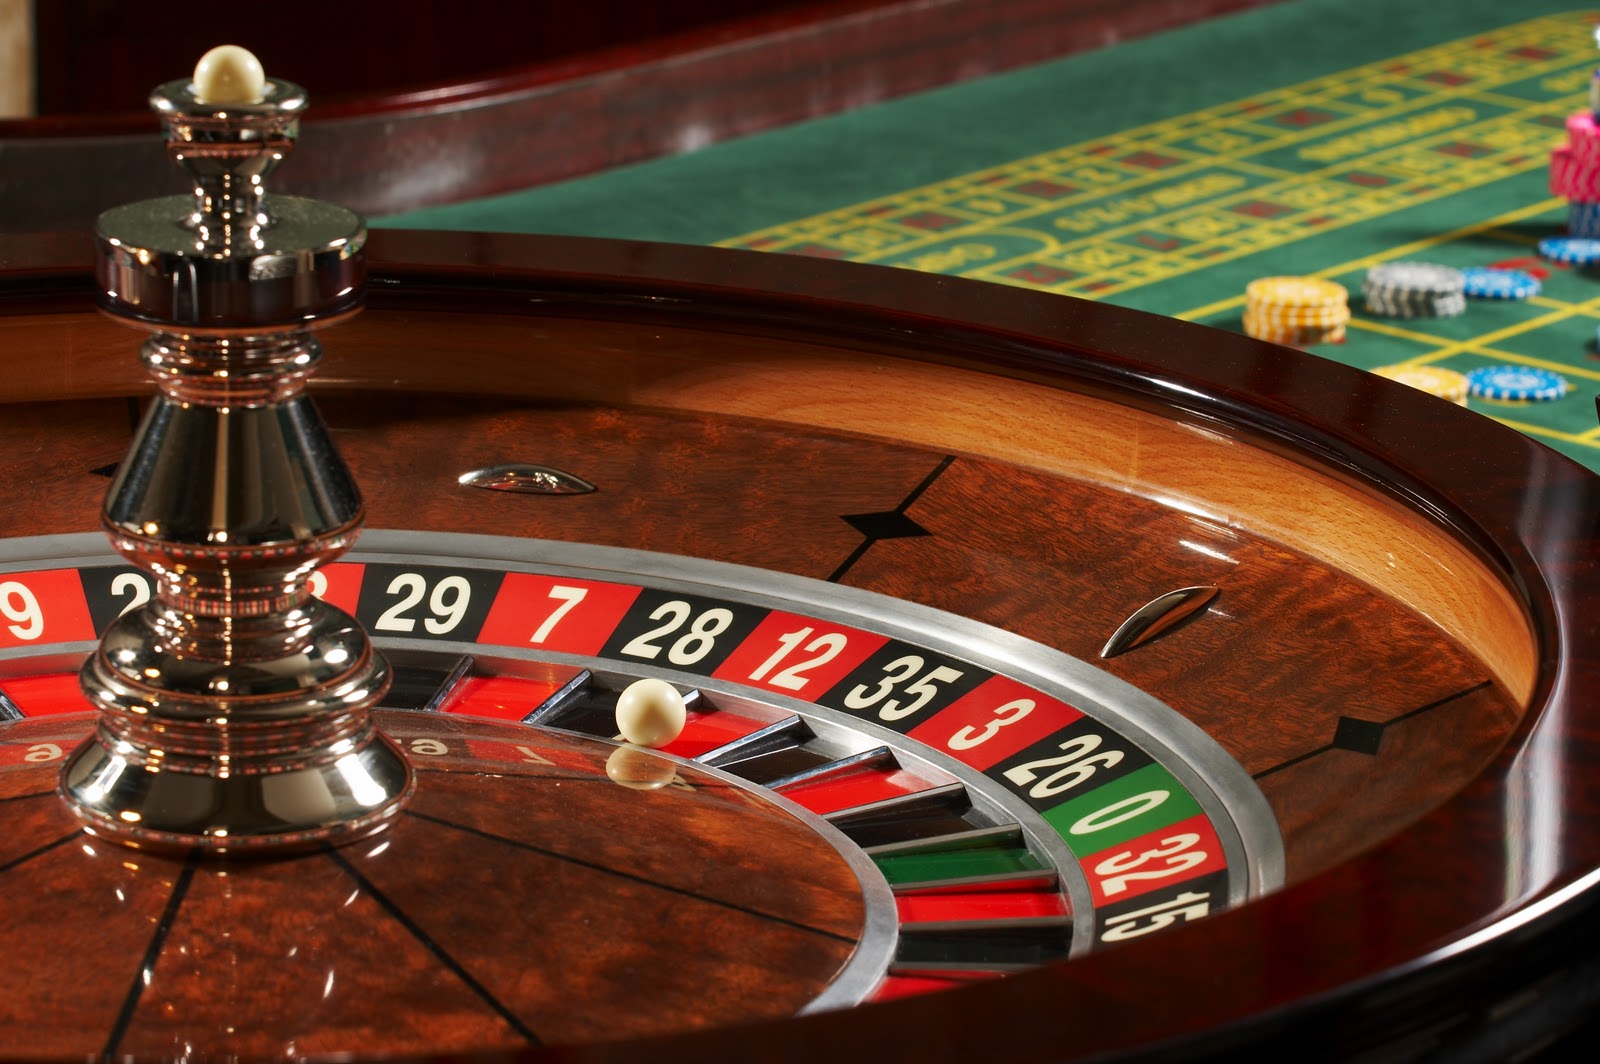 Jeux casino: des espaces lucratifs 